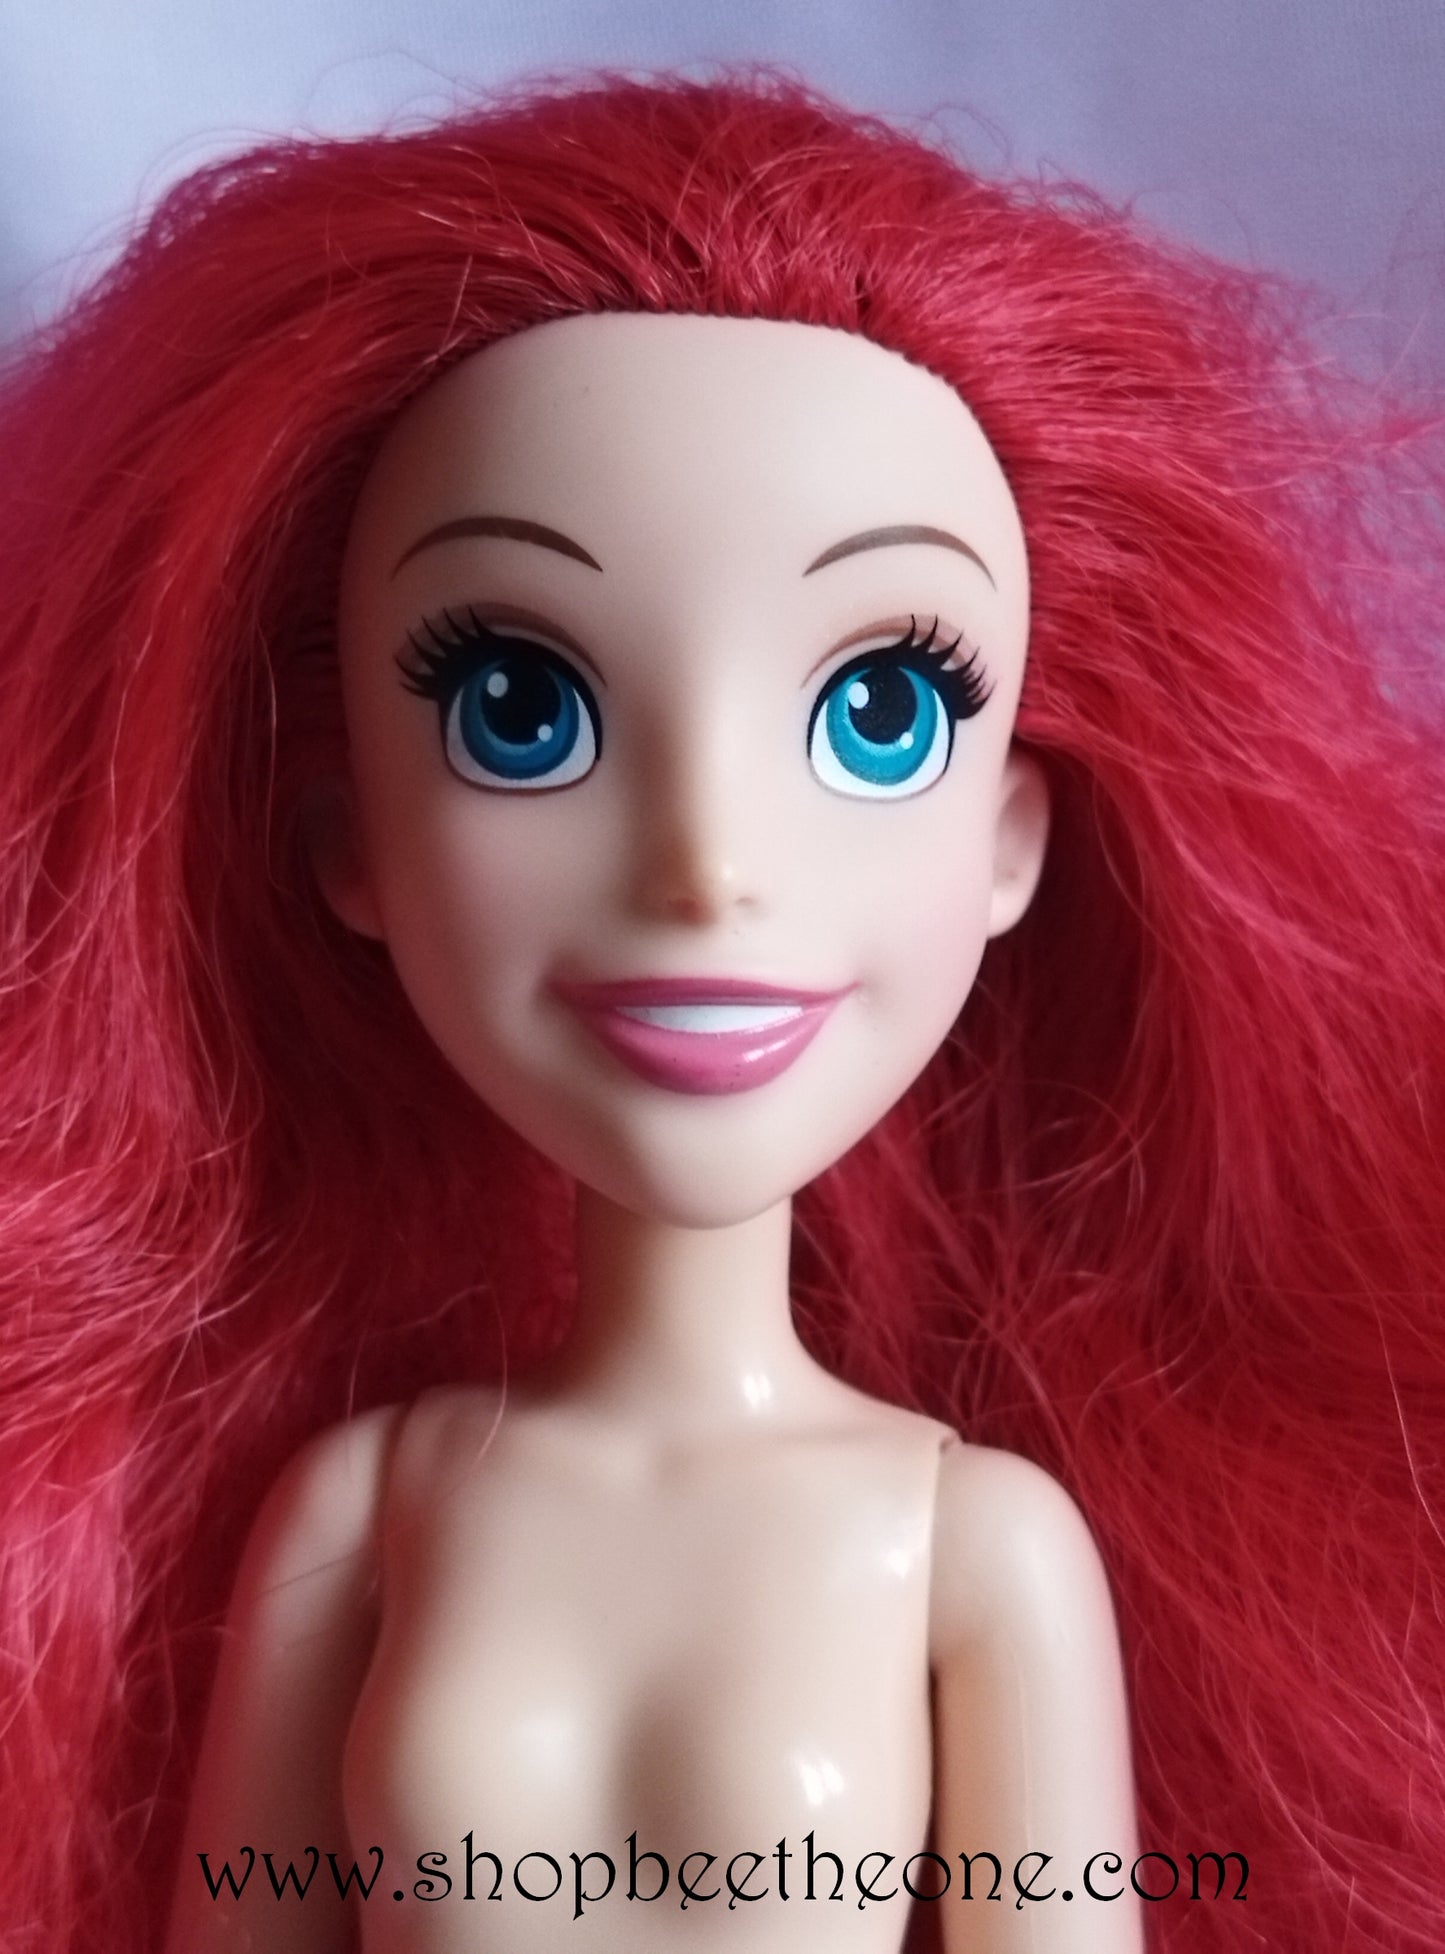 Disney Princesses Ariel Poussière d'étoiles (Royal Shimmer) - Hasbro 2015 - Poupée